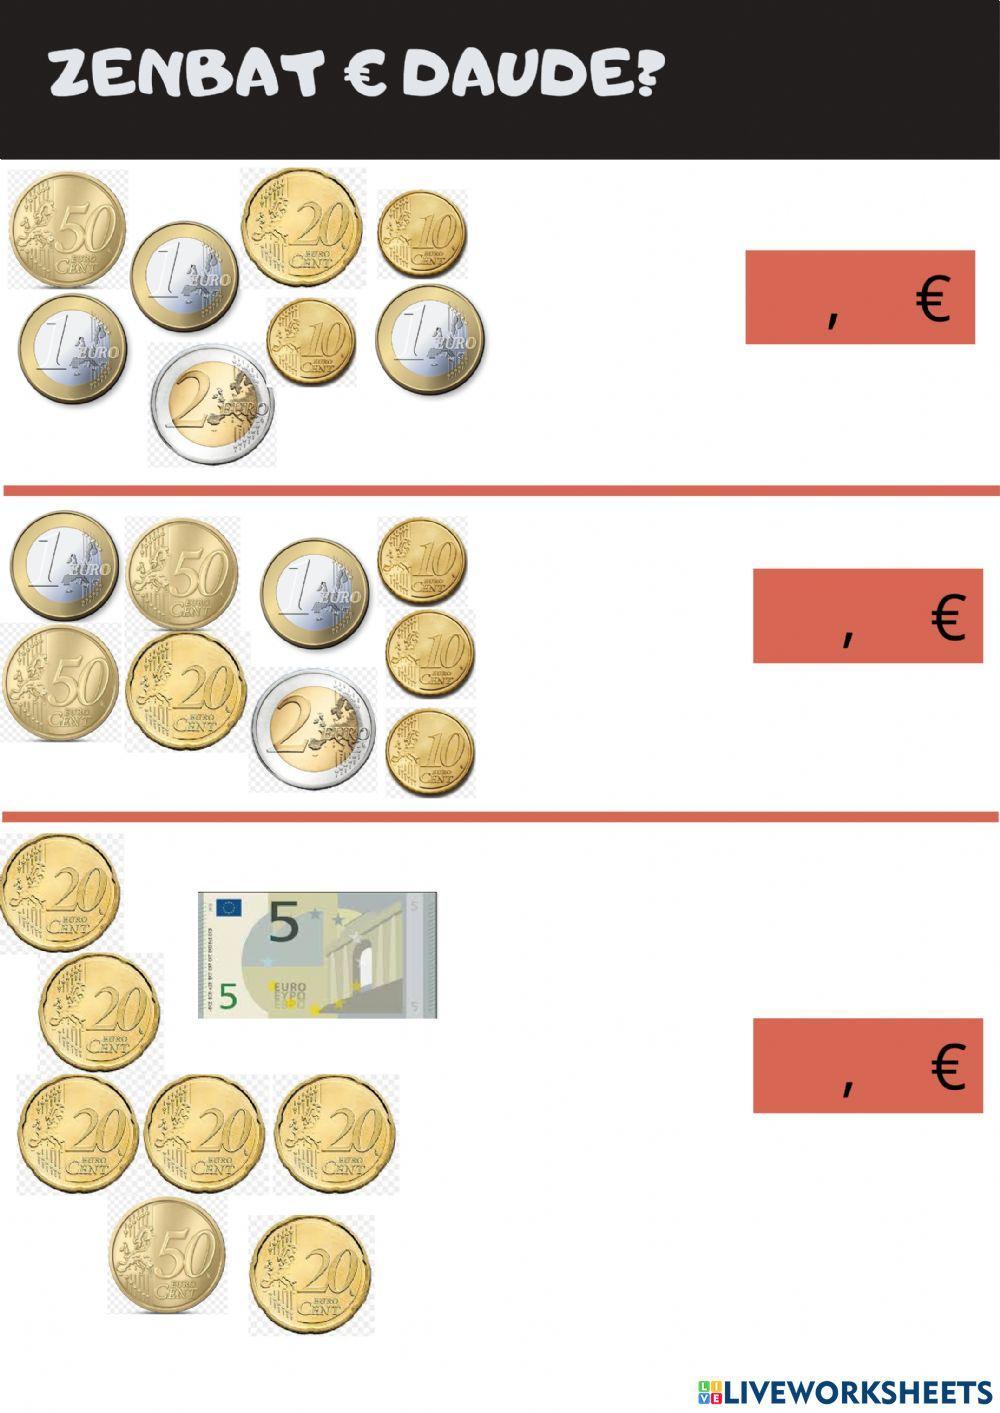 Euroen lanketa